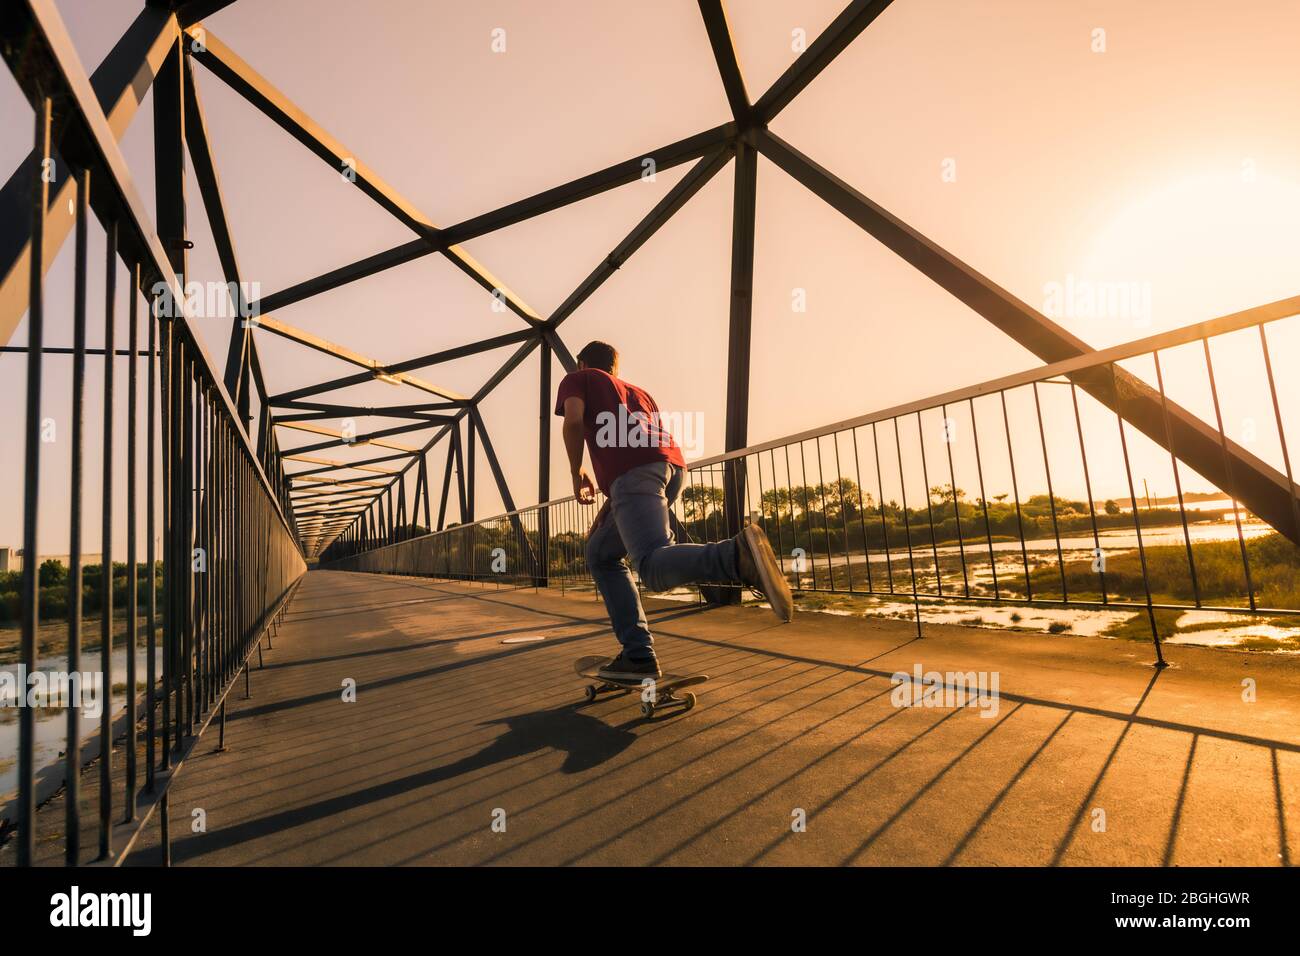 La vitesse du skate-boarder passe par le pont piétonnier au coucher du soleil. Banque D'Images